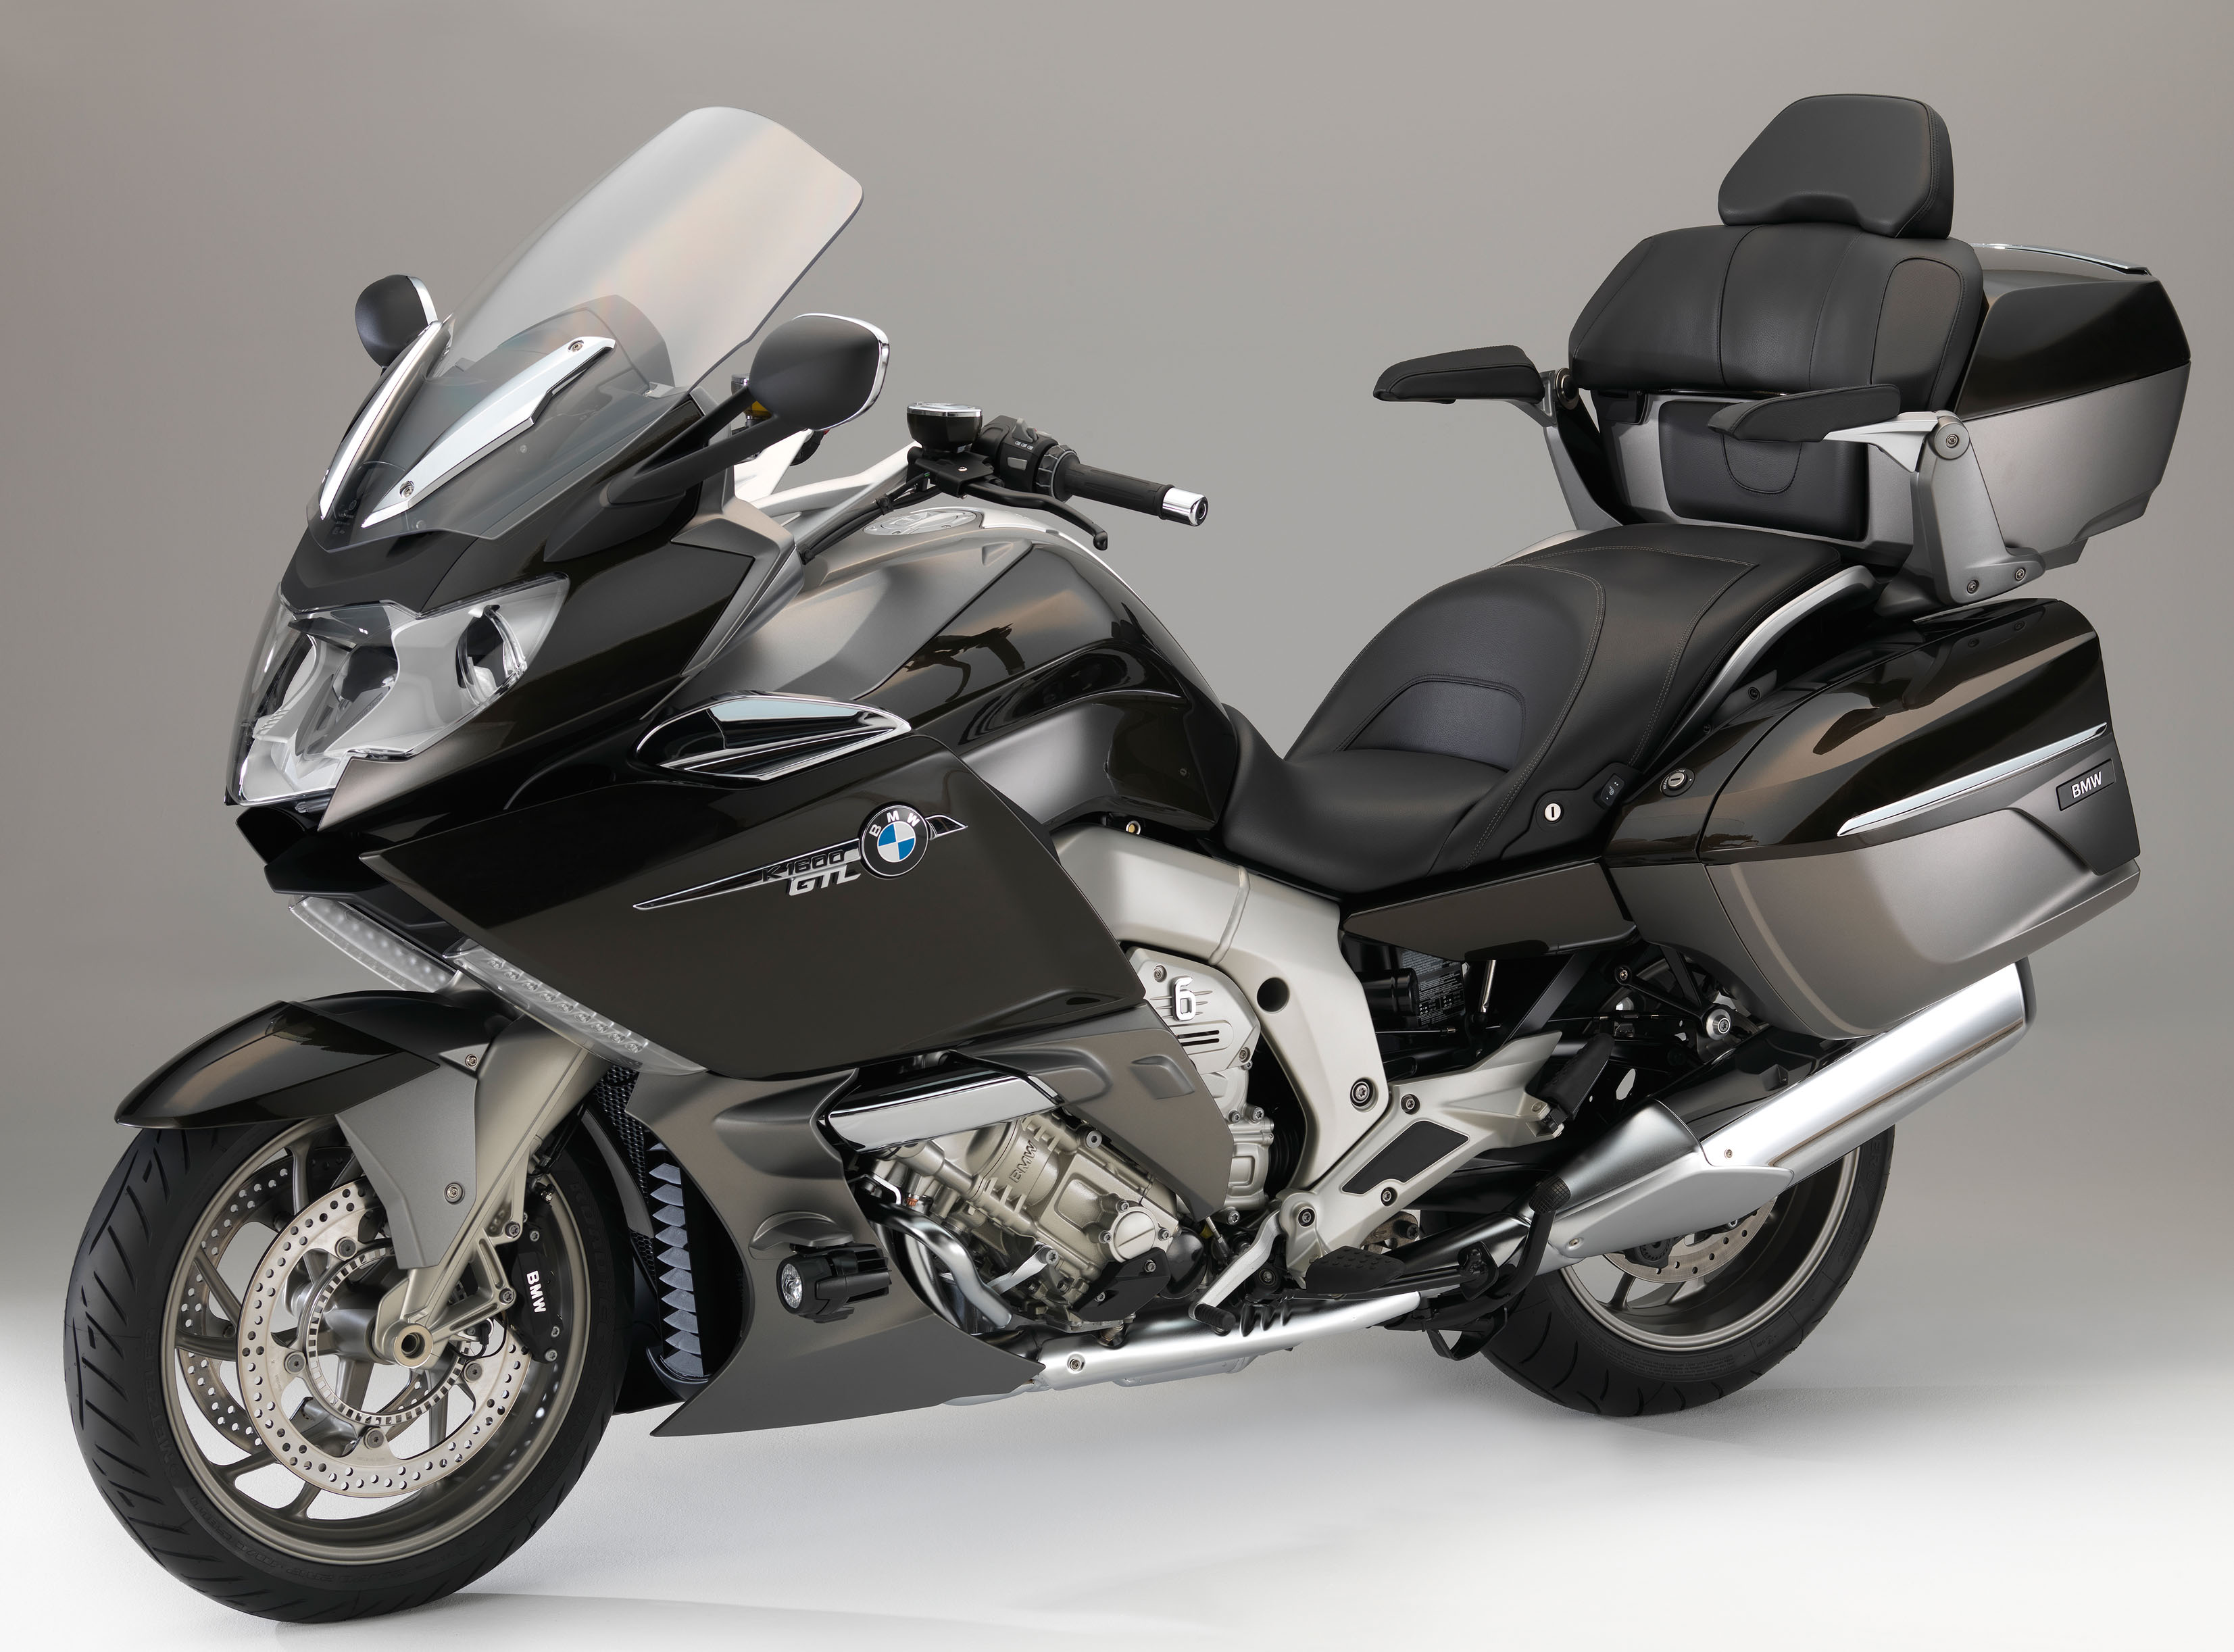 2016 BMW Motorcycles Get Minor Updates NEORIDERS